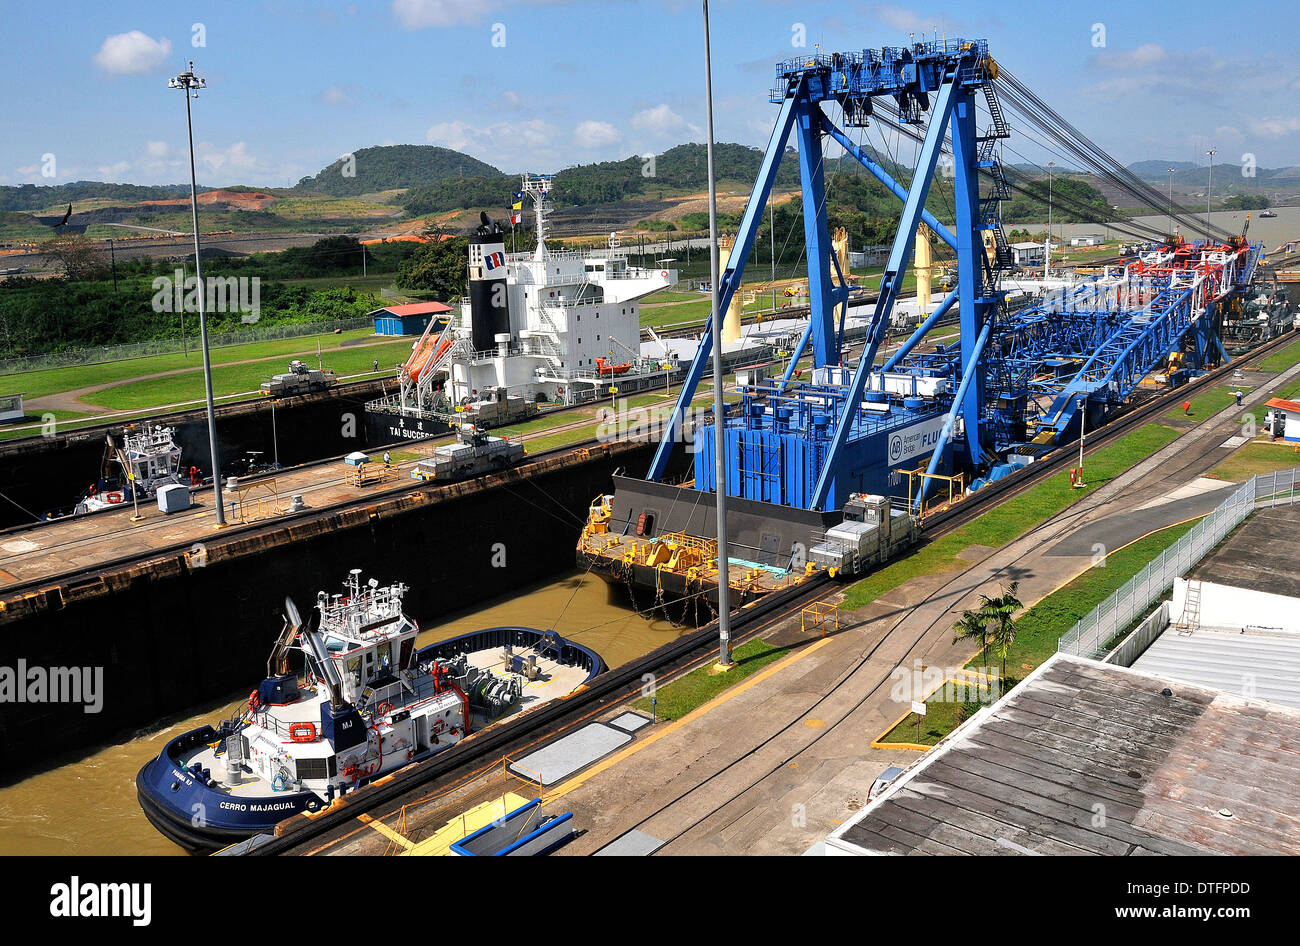 Left Coast Lifter il gigante gru galleggiante di 'American Bridge Fluor' in Panama Canal Miraflores Locks Panama Foto Stock